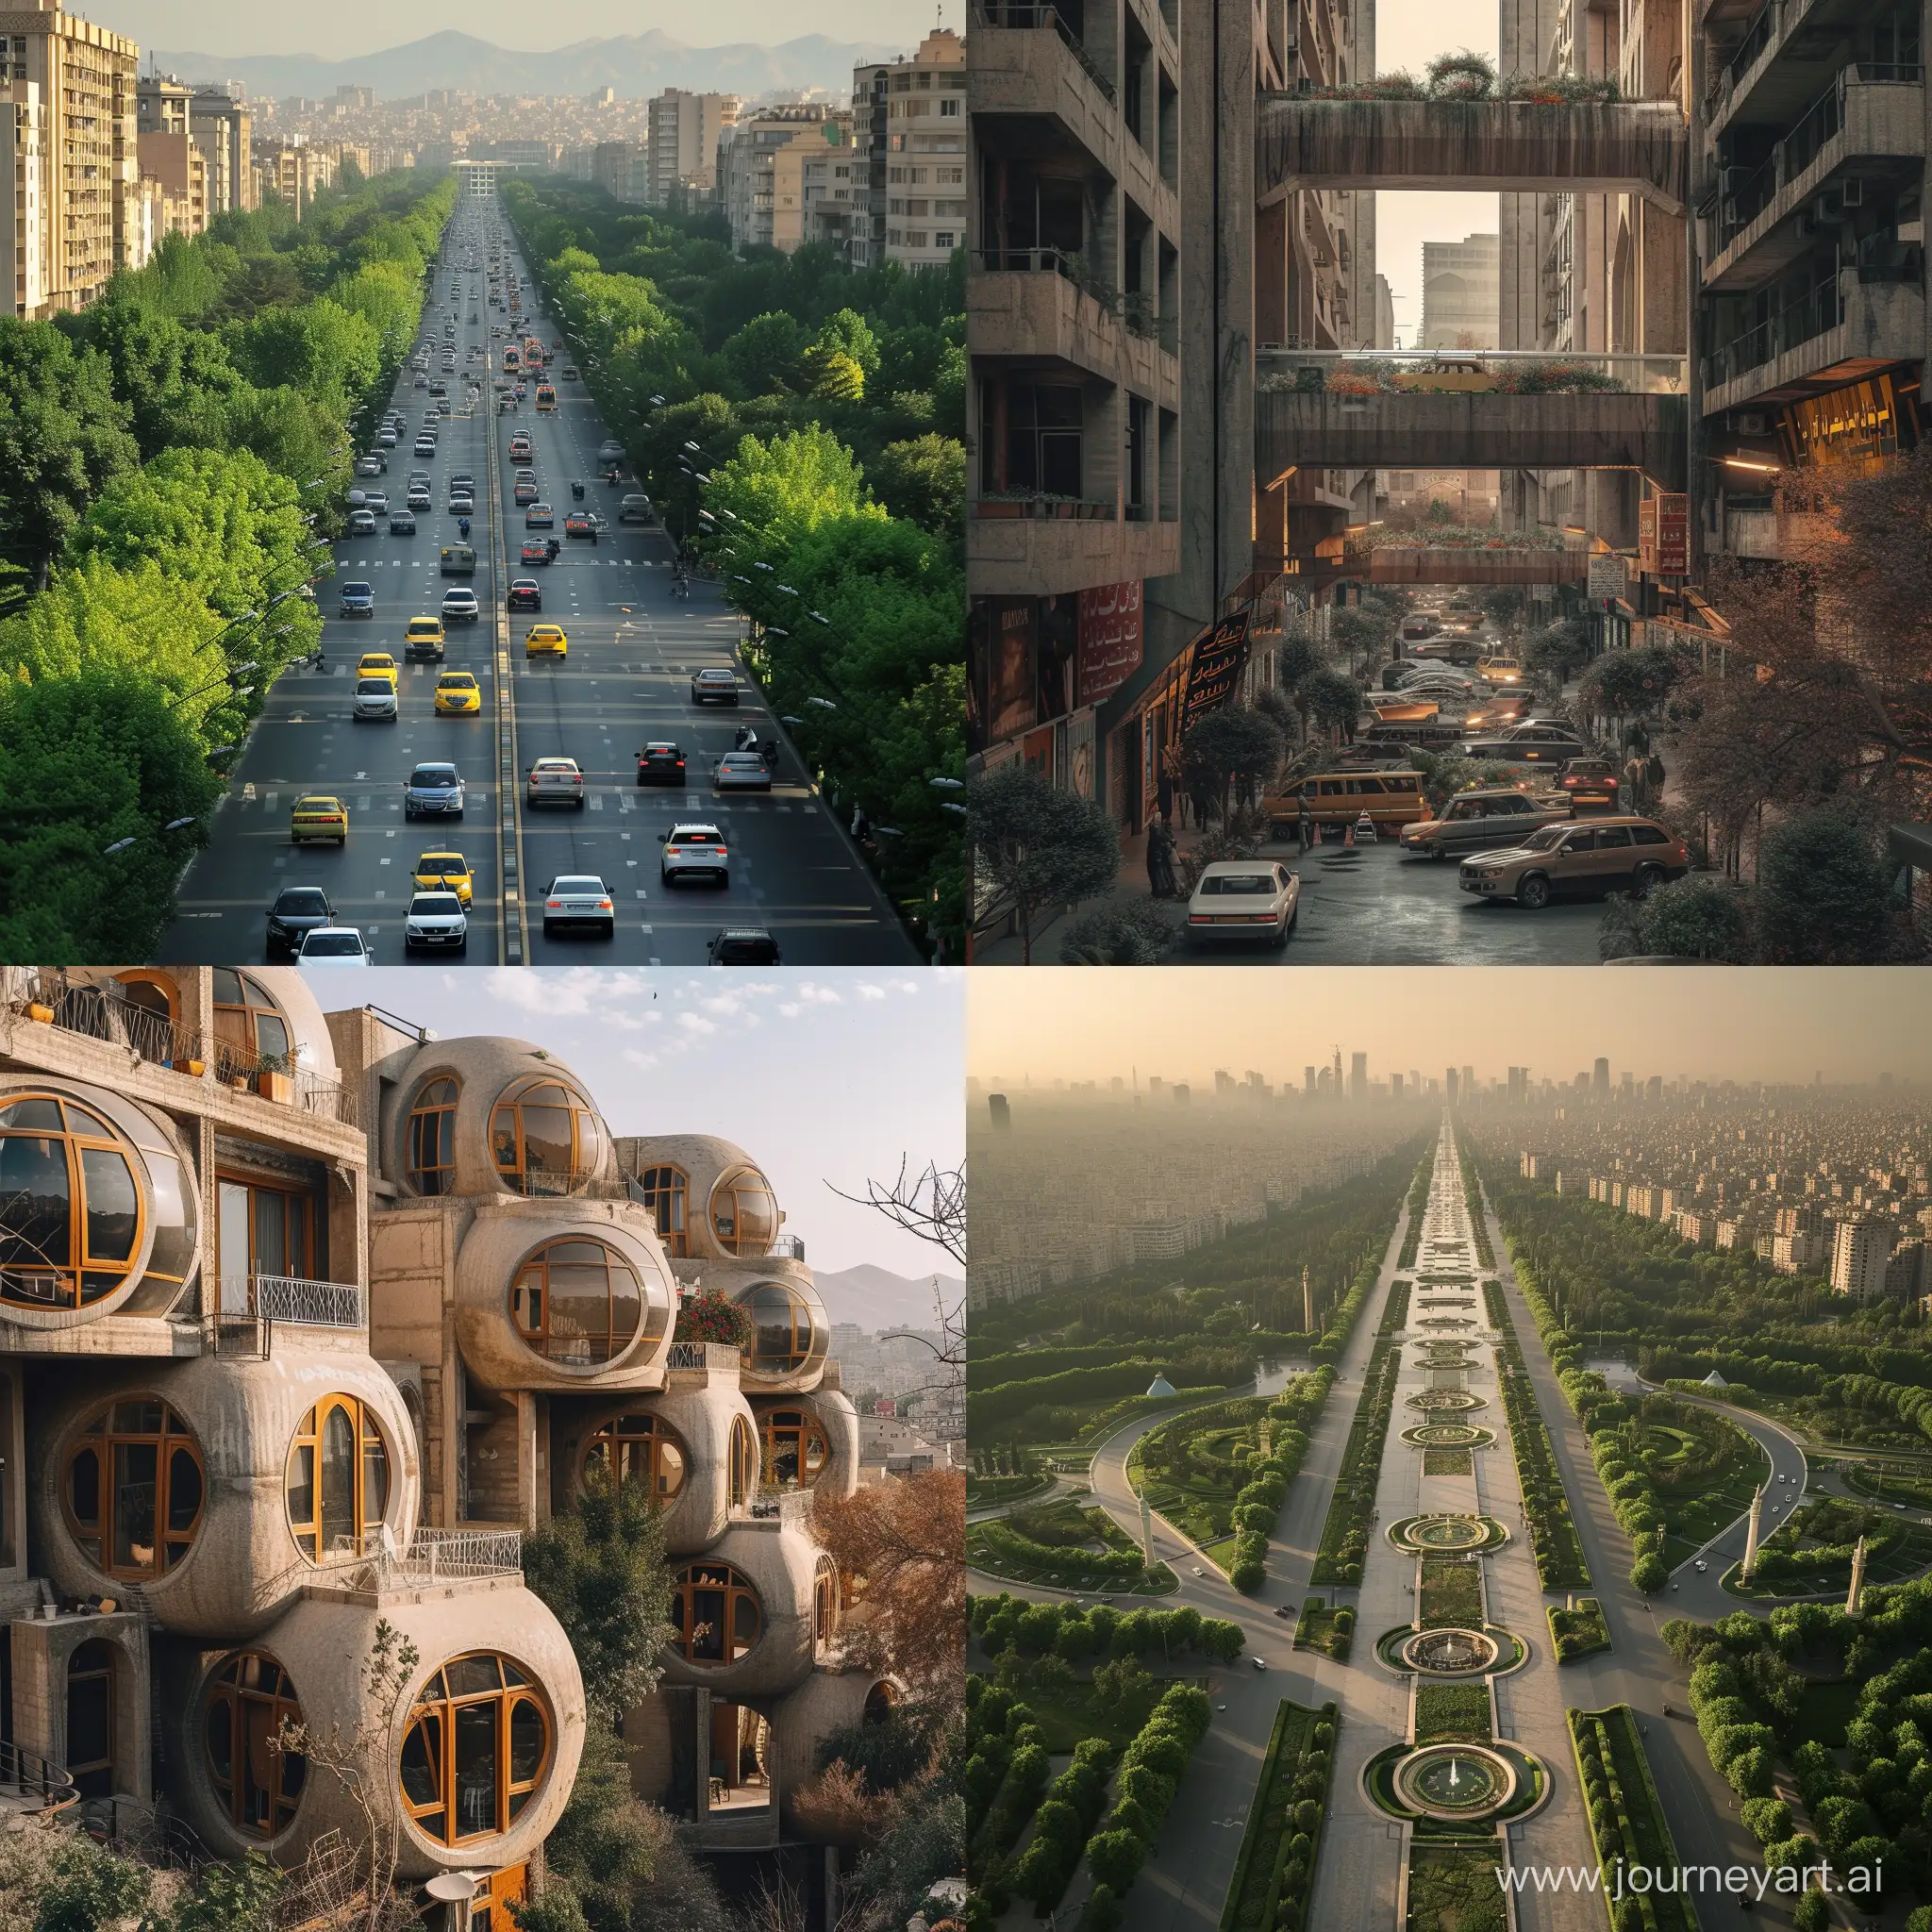 Tehran in 2050